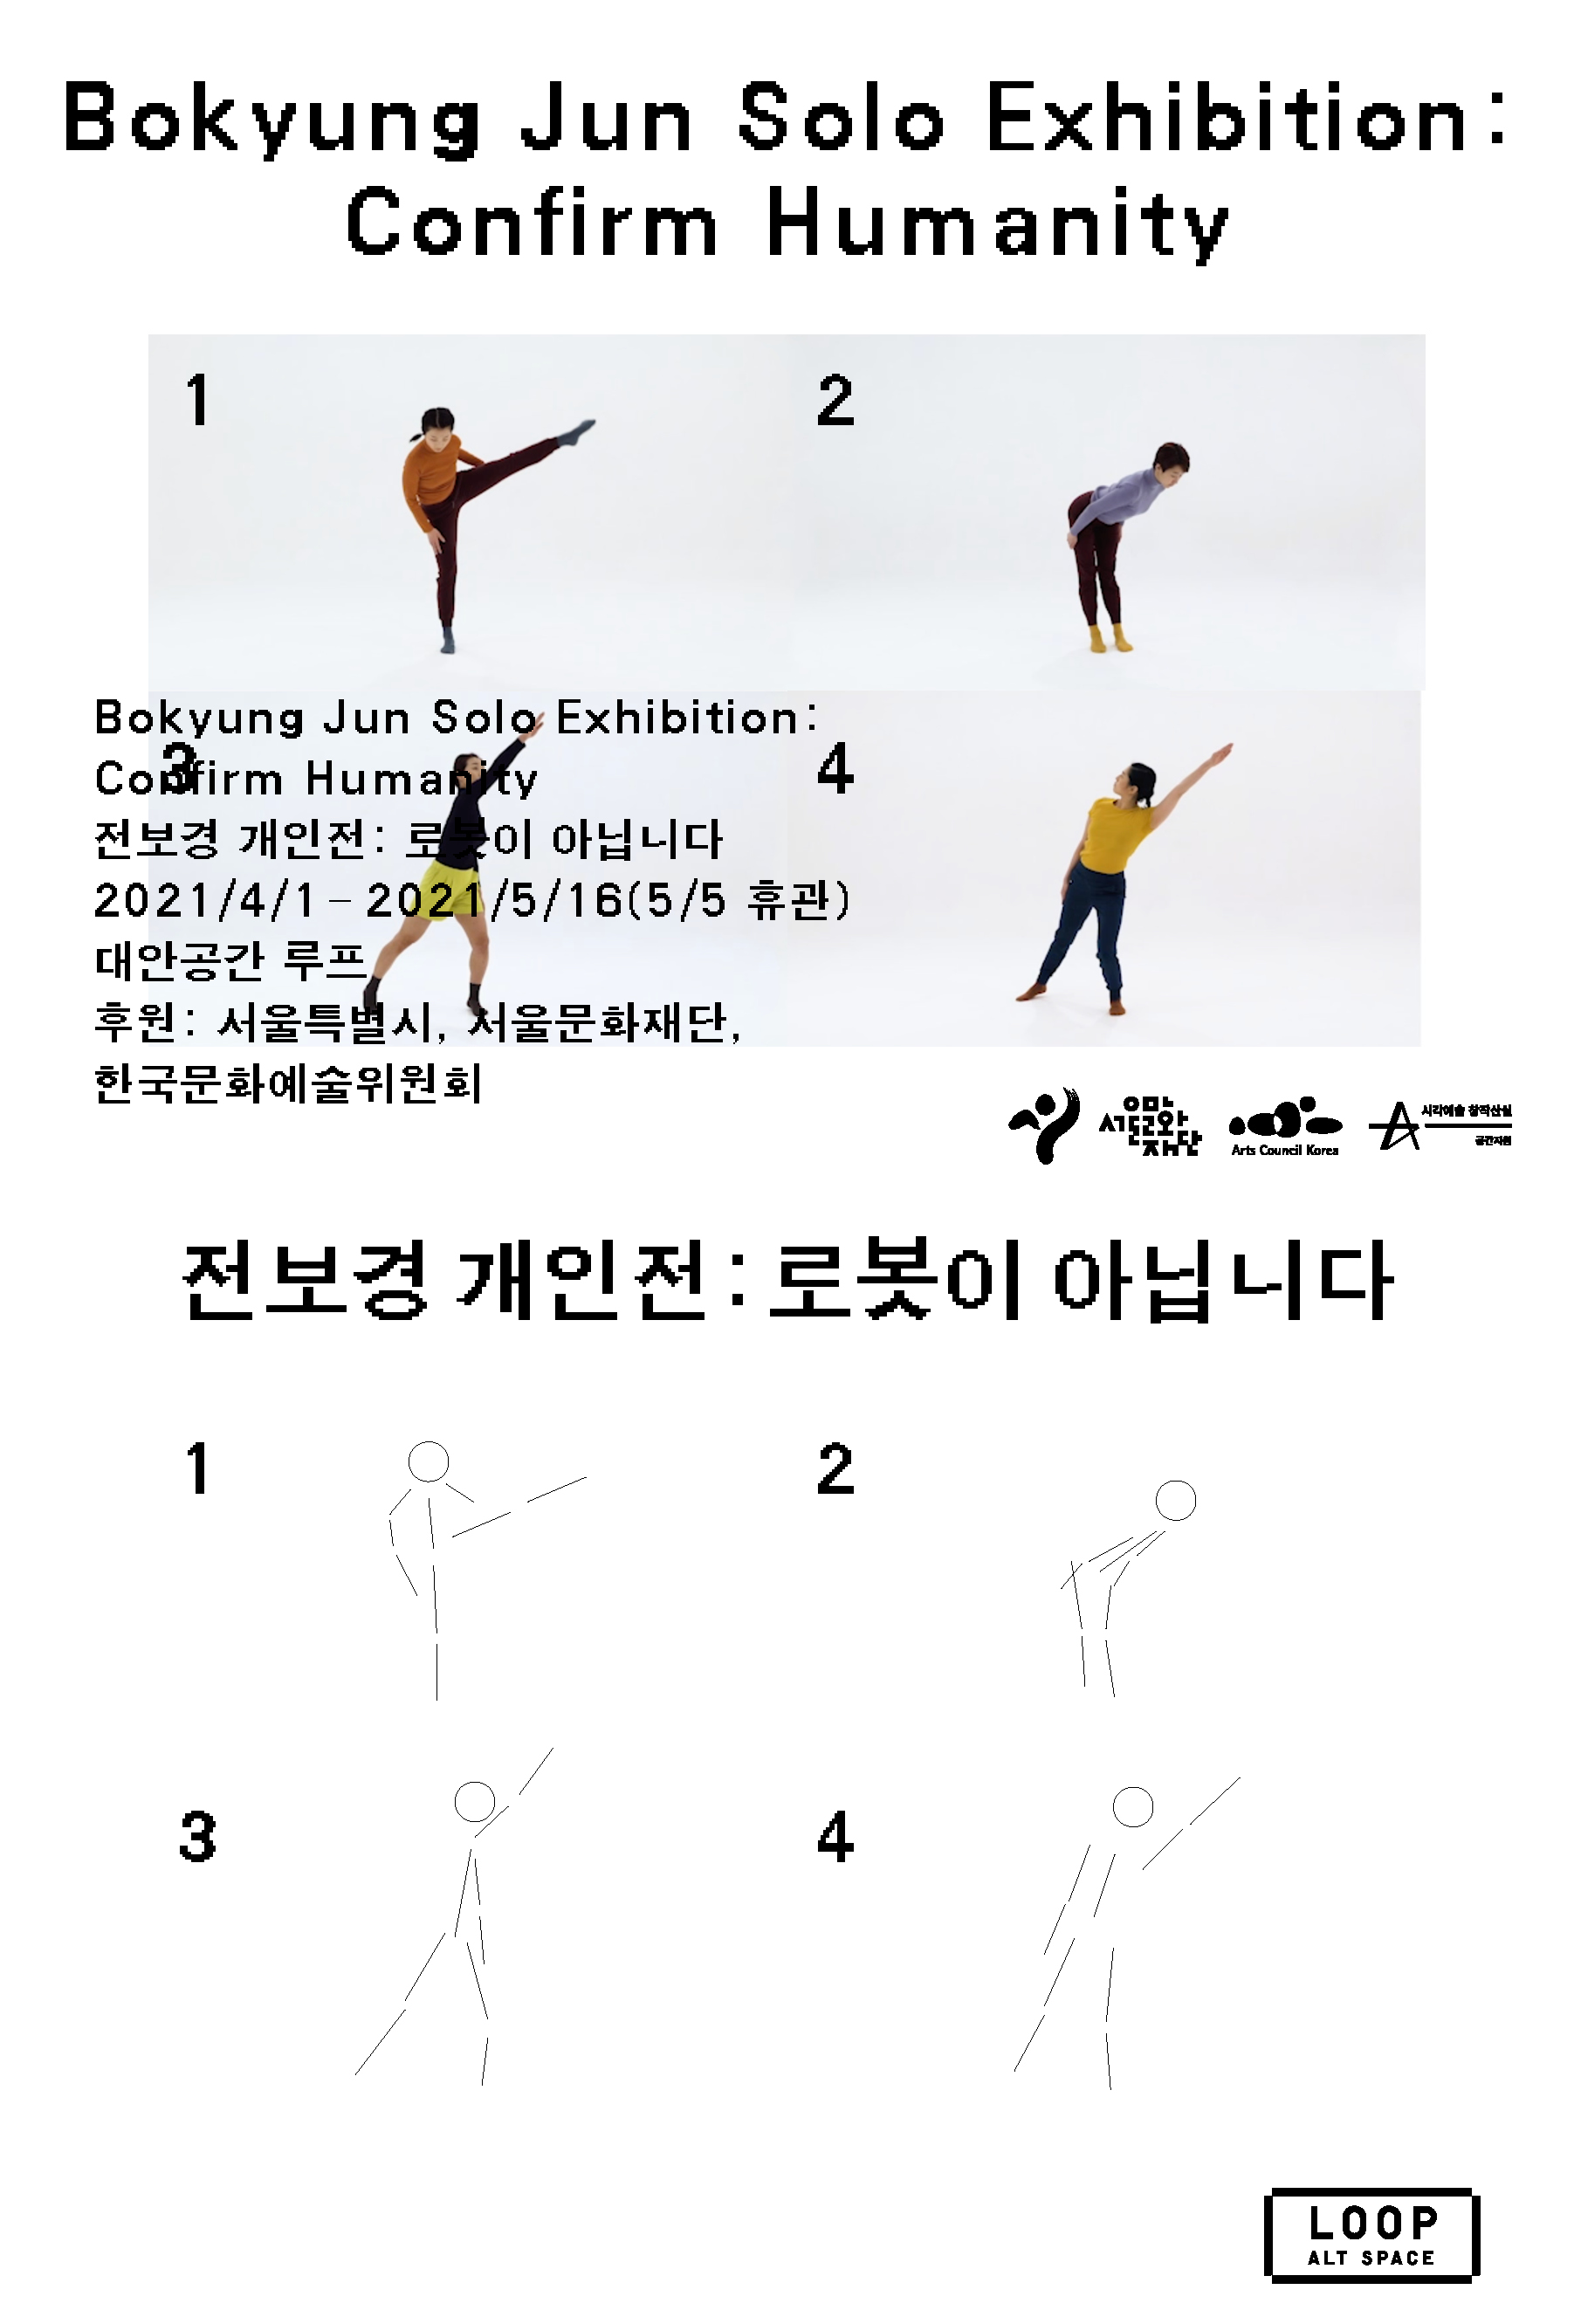 Bokyung Jun Solo Exhibition: Confirm Humanity